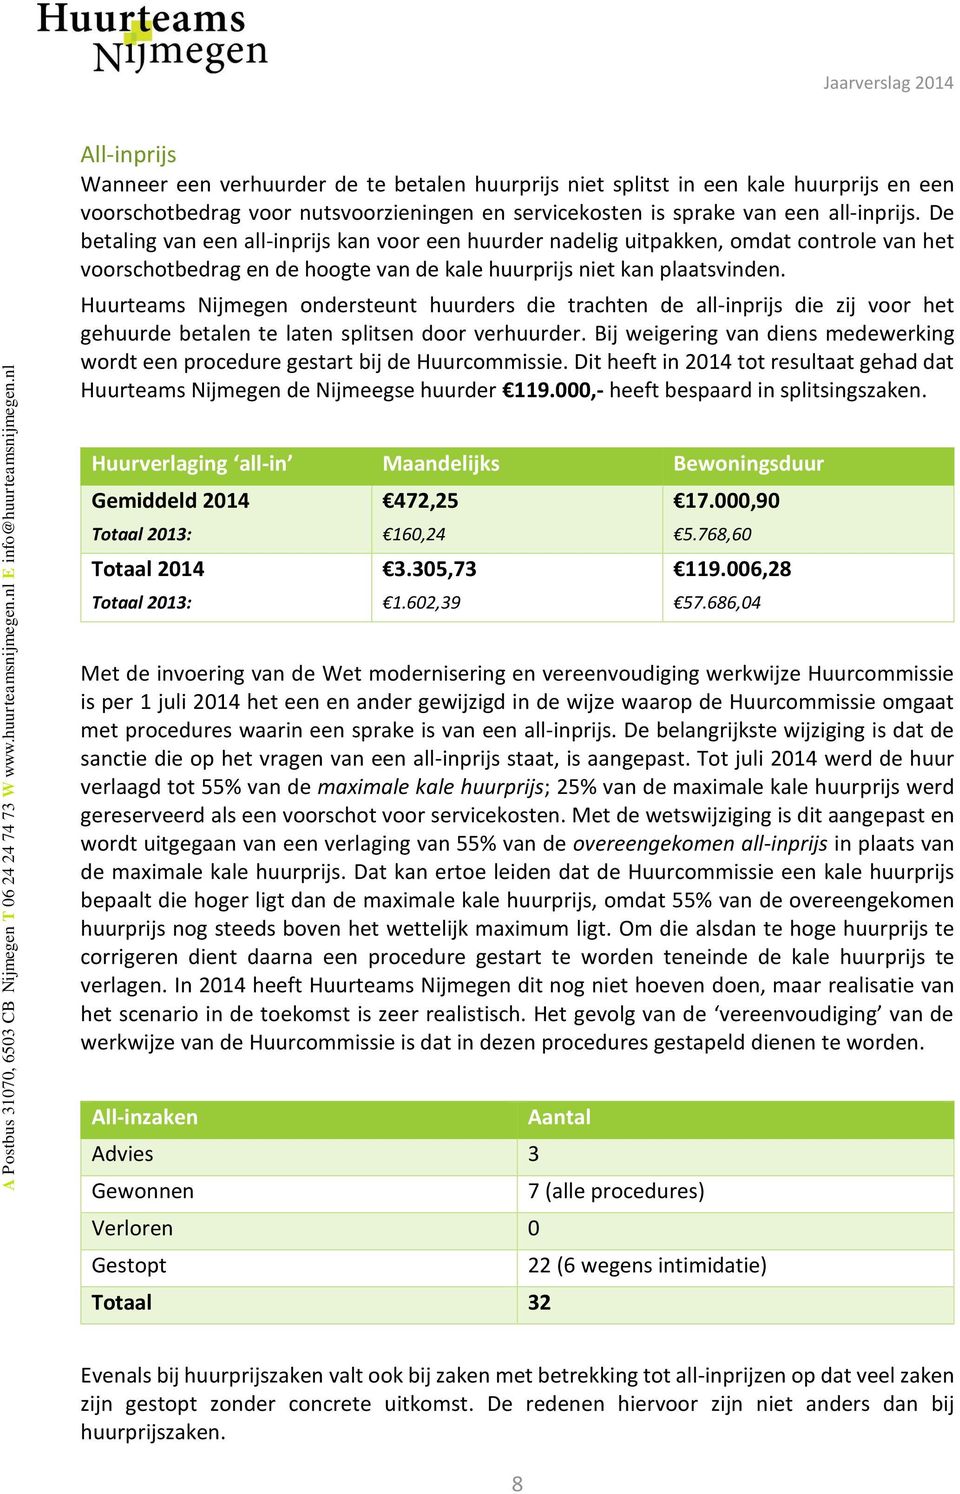 Huurteams Nijmegen ondersteunt huurders die trachten de all-inprijs die zij voor het gehuurde betalen te laten splitsen door verhuurder.